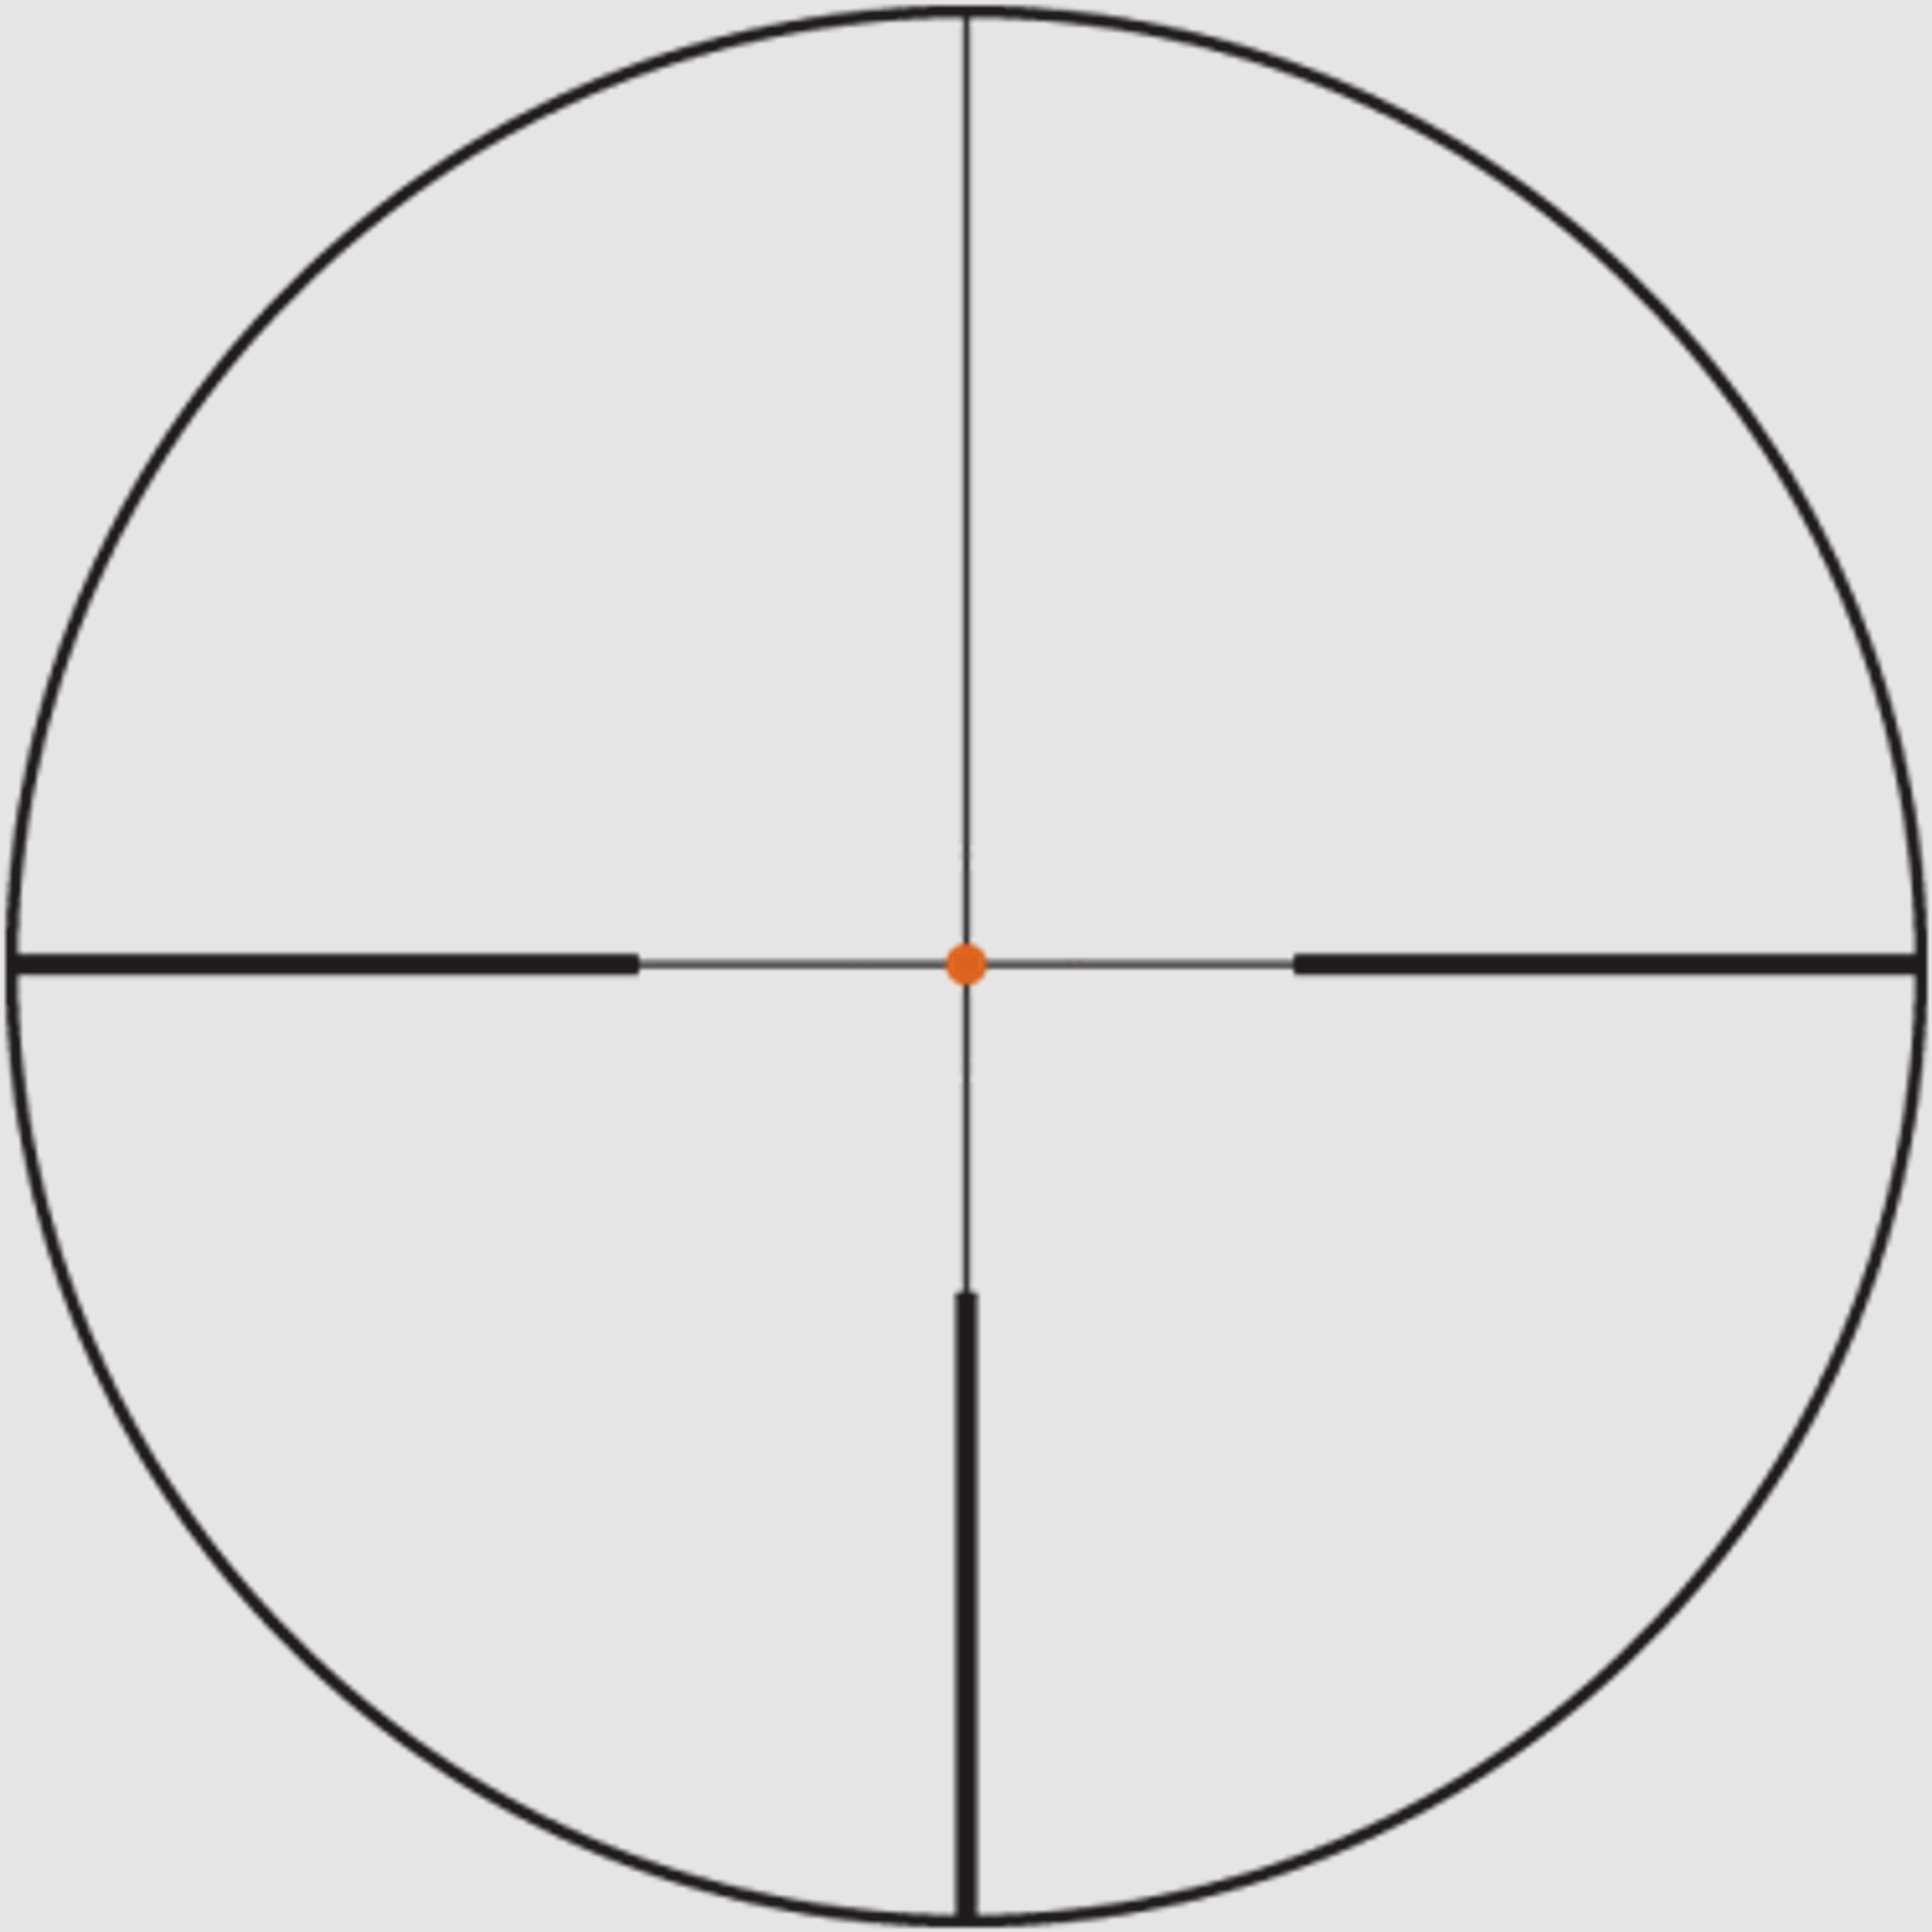 SWAROVSKI Zielfernrohr mit Leuchtabsehen 1,7-13,3x42 P Z8i L (30mm) Abs. 4A-IF FLEXCHANGE